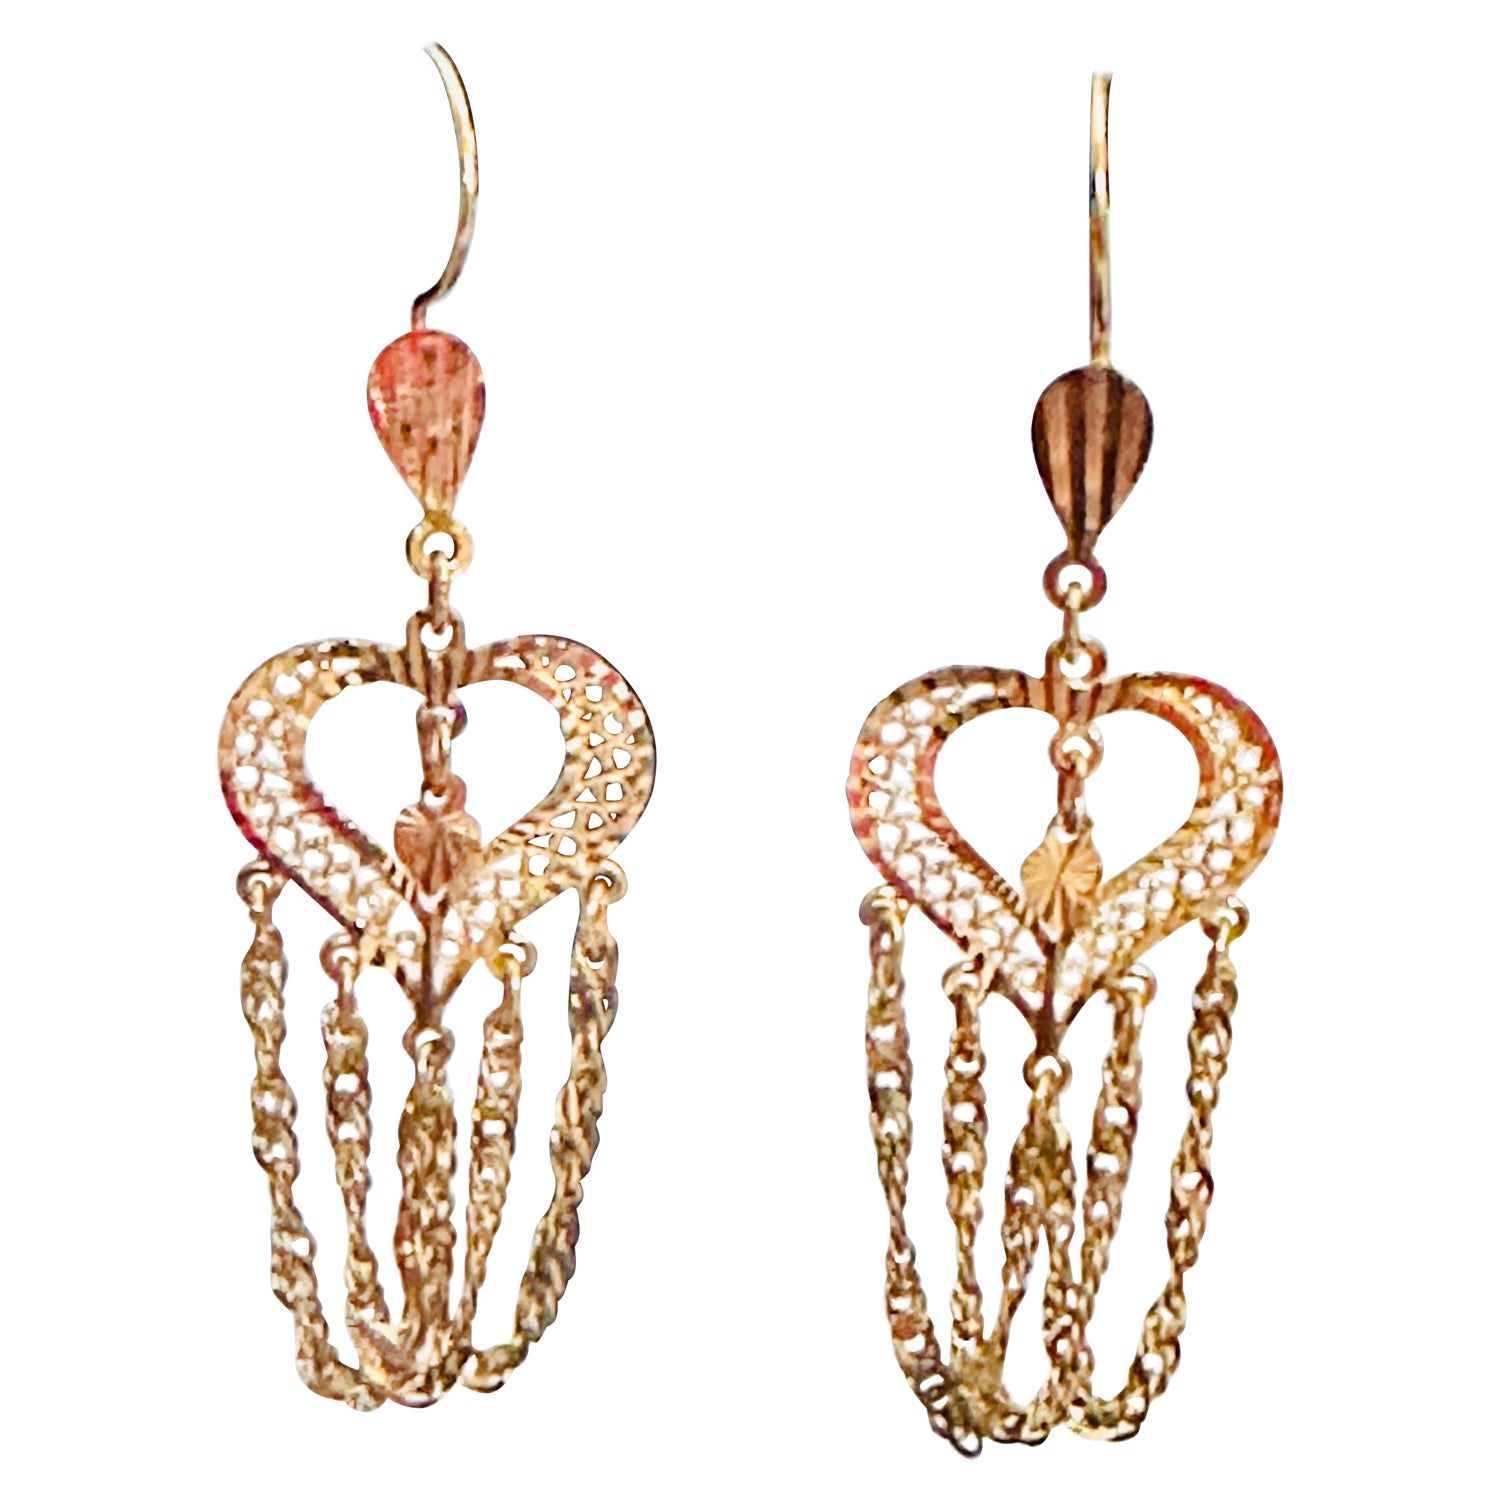 21 K Gold Earrings - 17 For Sale on 1stDibs | 21 karat gold earrings price,  21 carat gold earrings, 21k gold hoop earrings